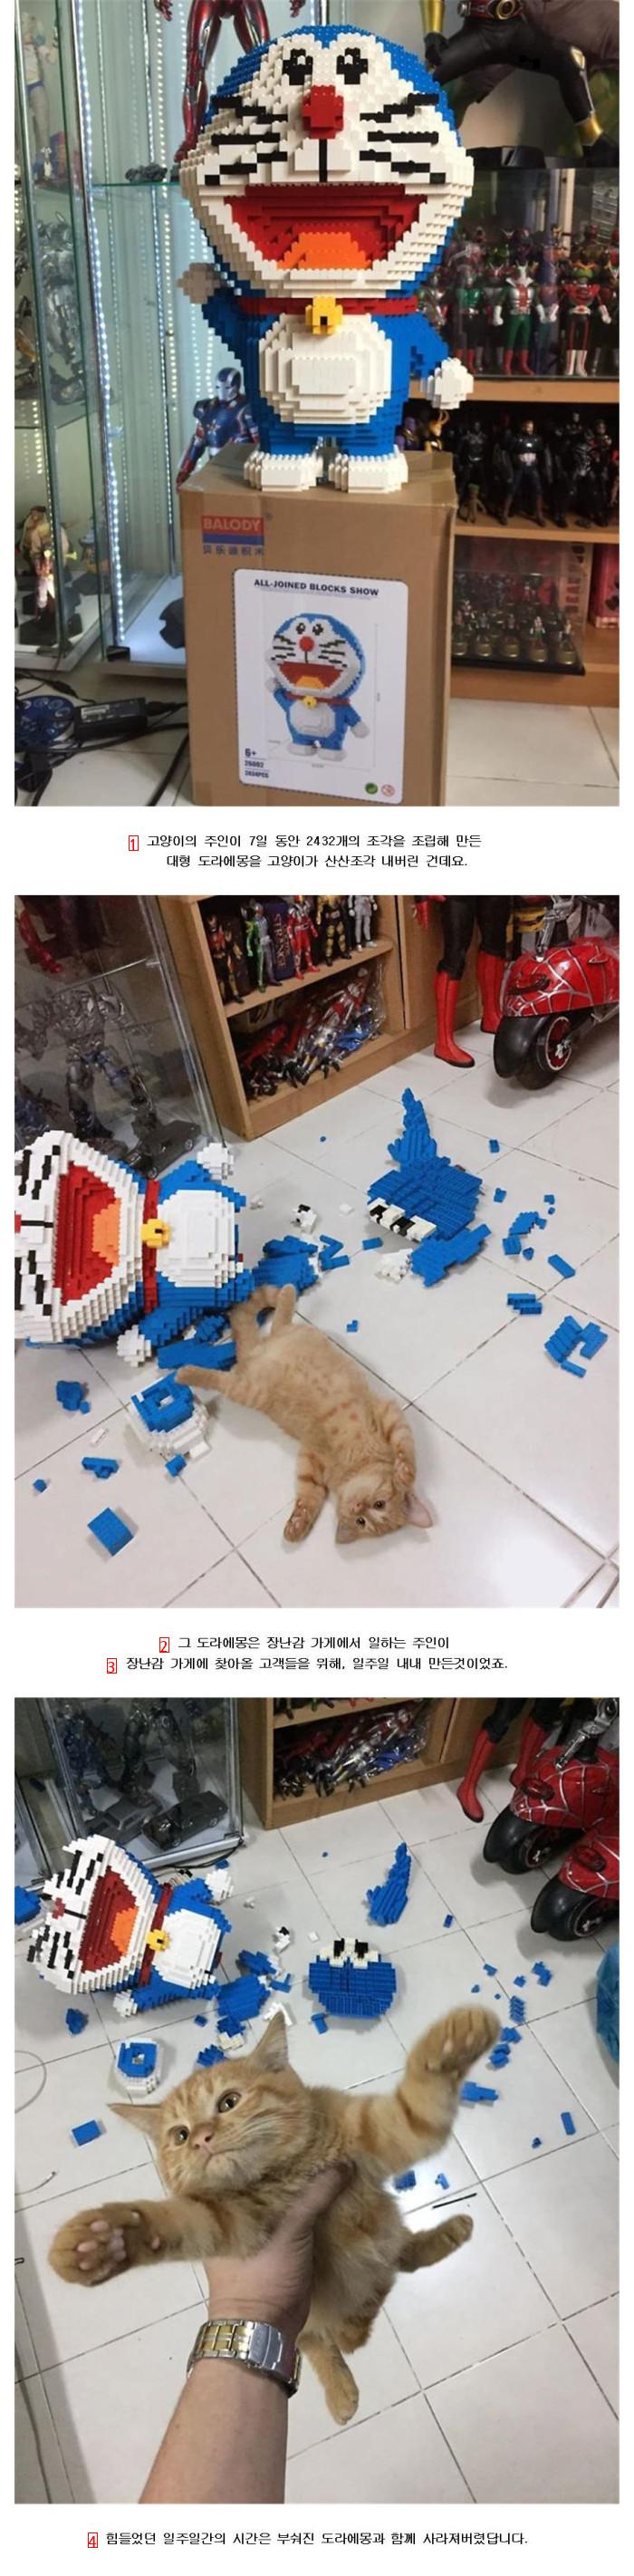 7일 동안 만든 대형 레고를 고양이가 부쉈다.